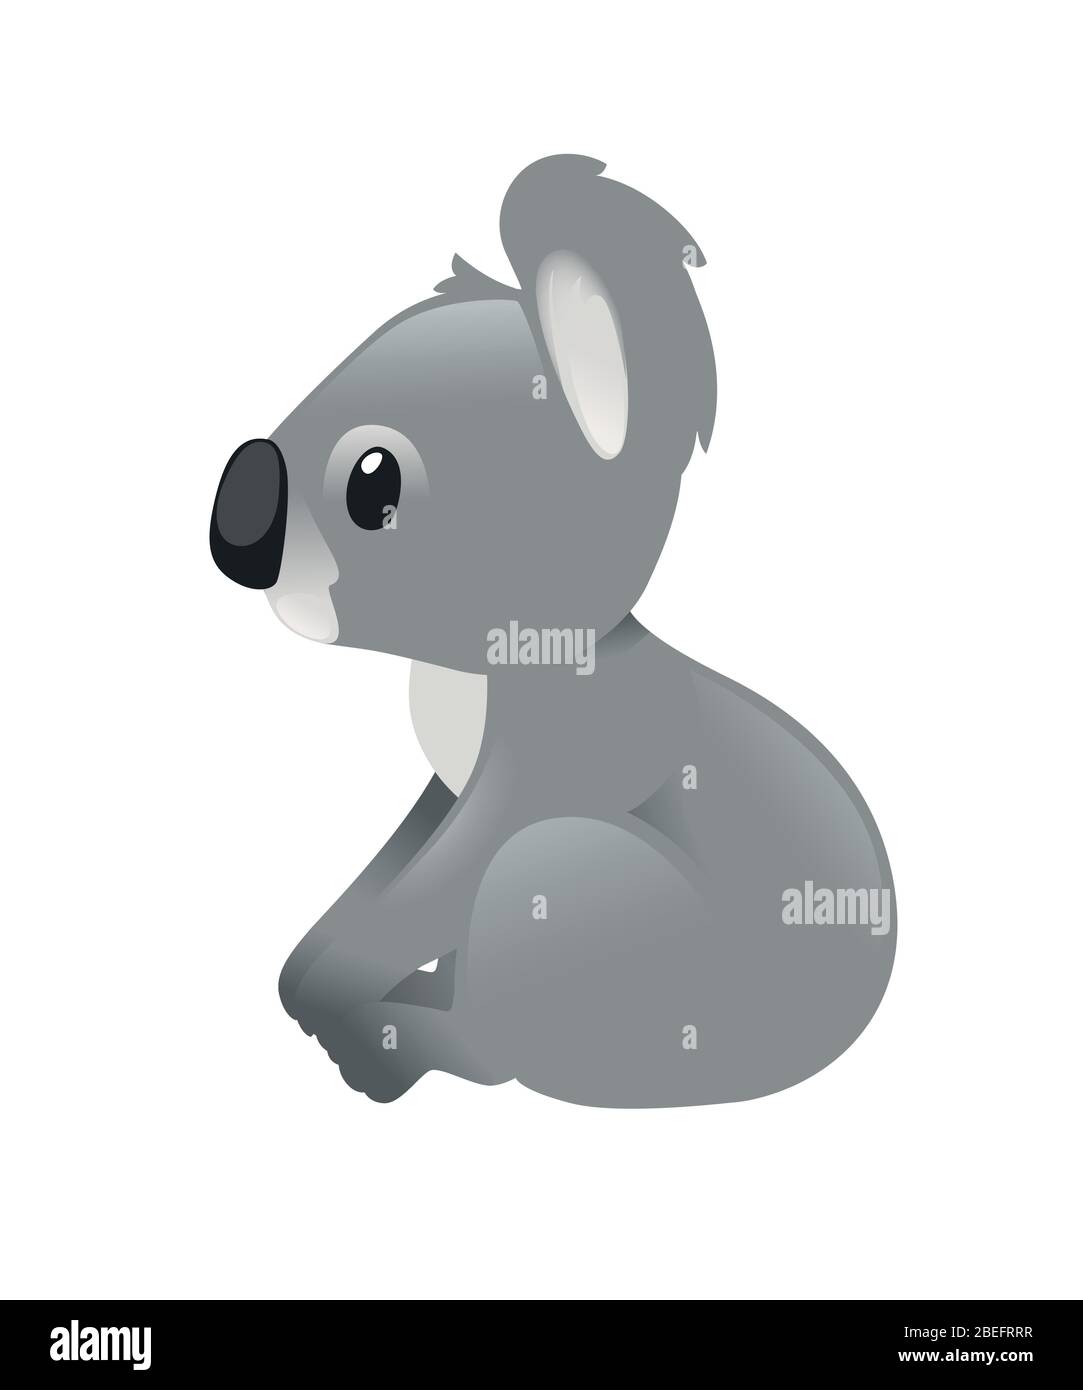 Niedlichen grauen Koala Bär sitzen auf dem Boden und freuen uns Cartoon Tier Design flache Vektor-Illustration auf weißem Hintergrund isoliert Stock Vektor